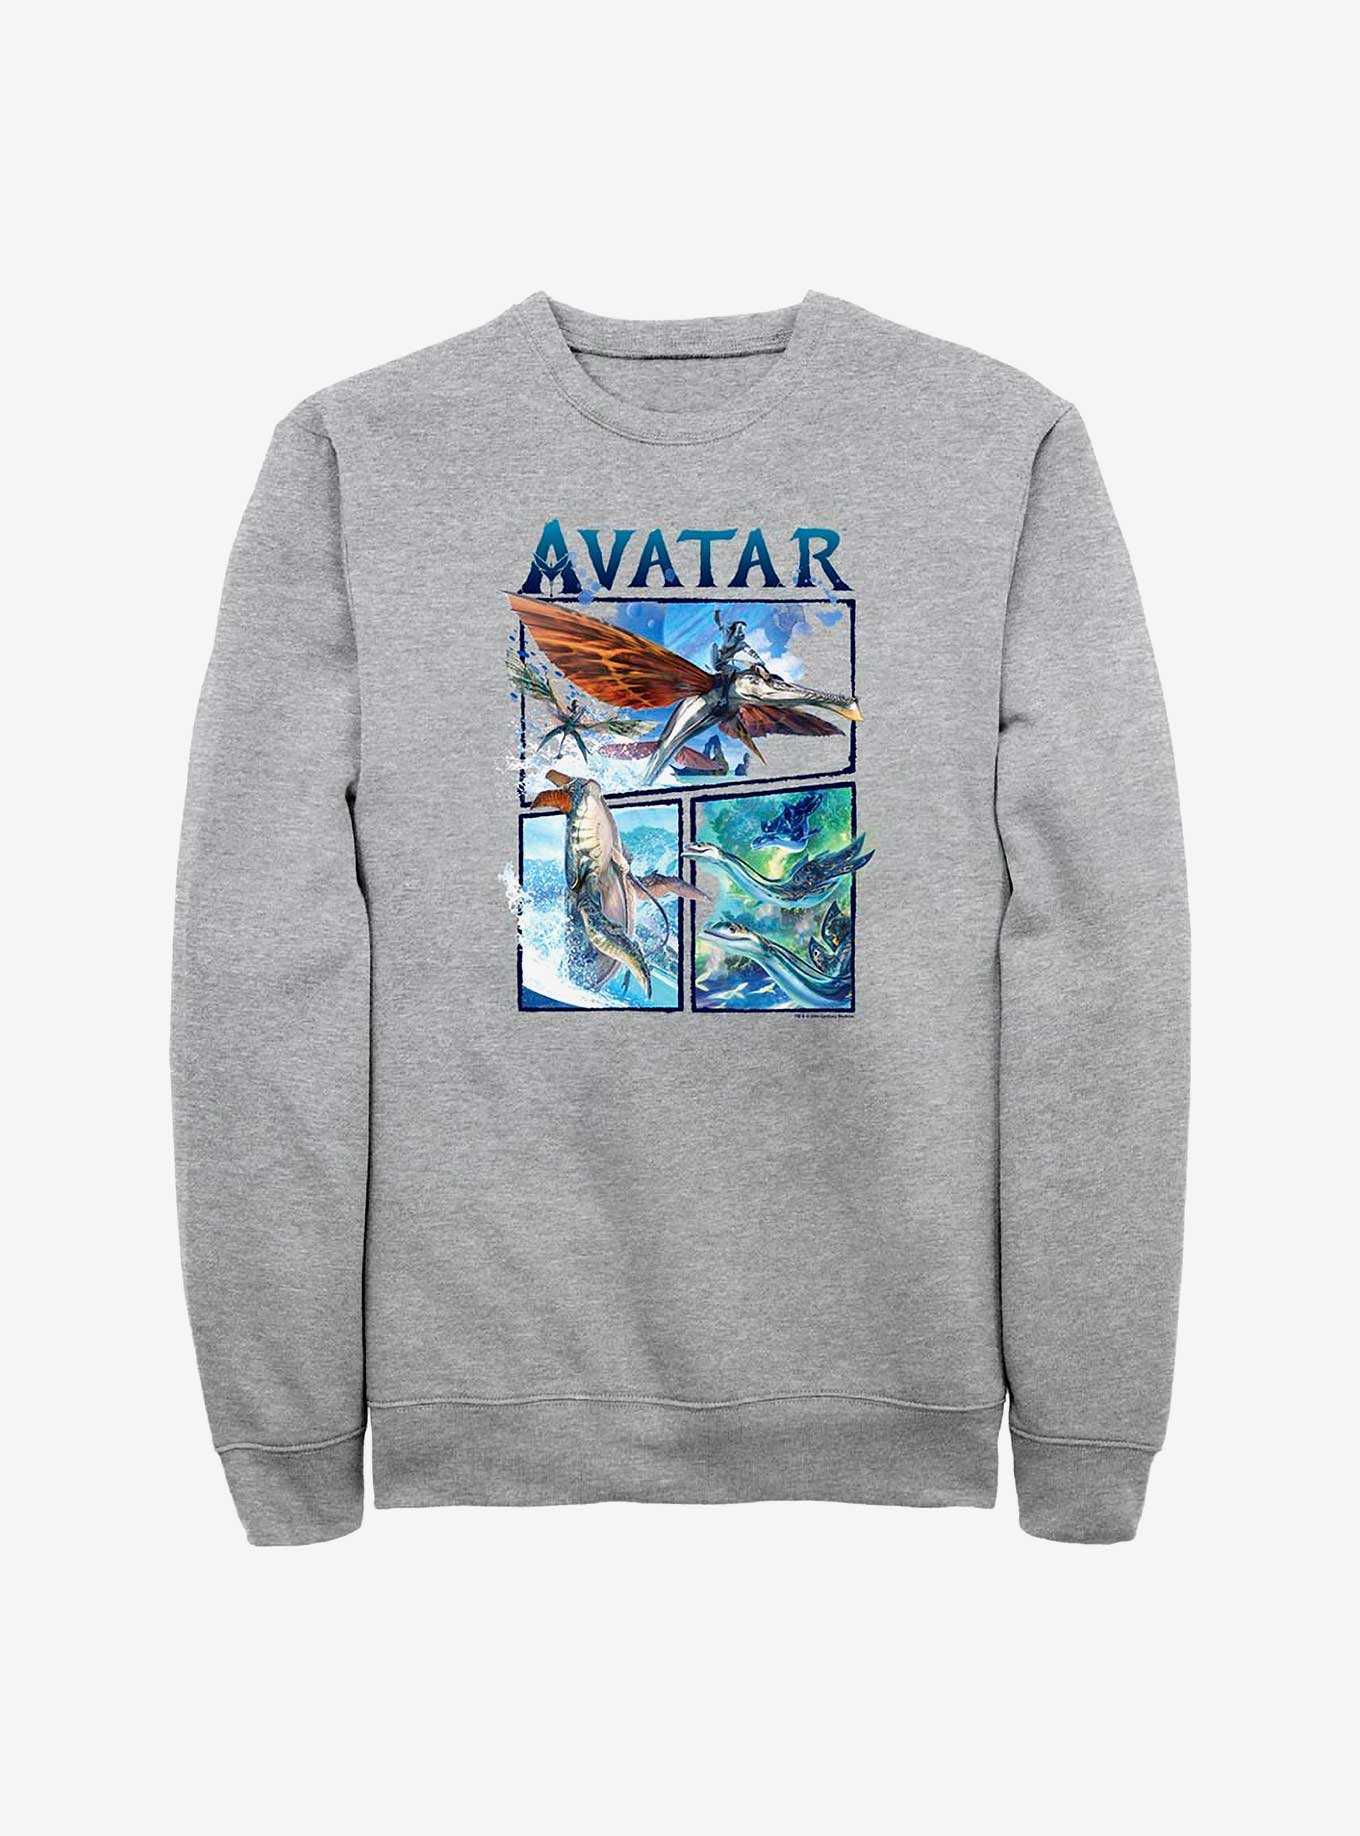 Avatar: The Way of Water Air and Sea Sweatshirt, , hi-res